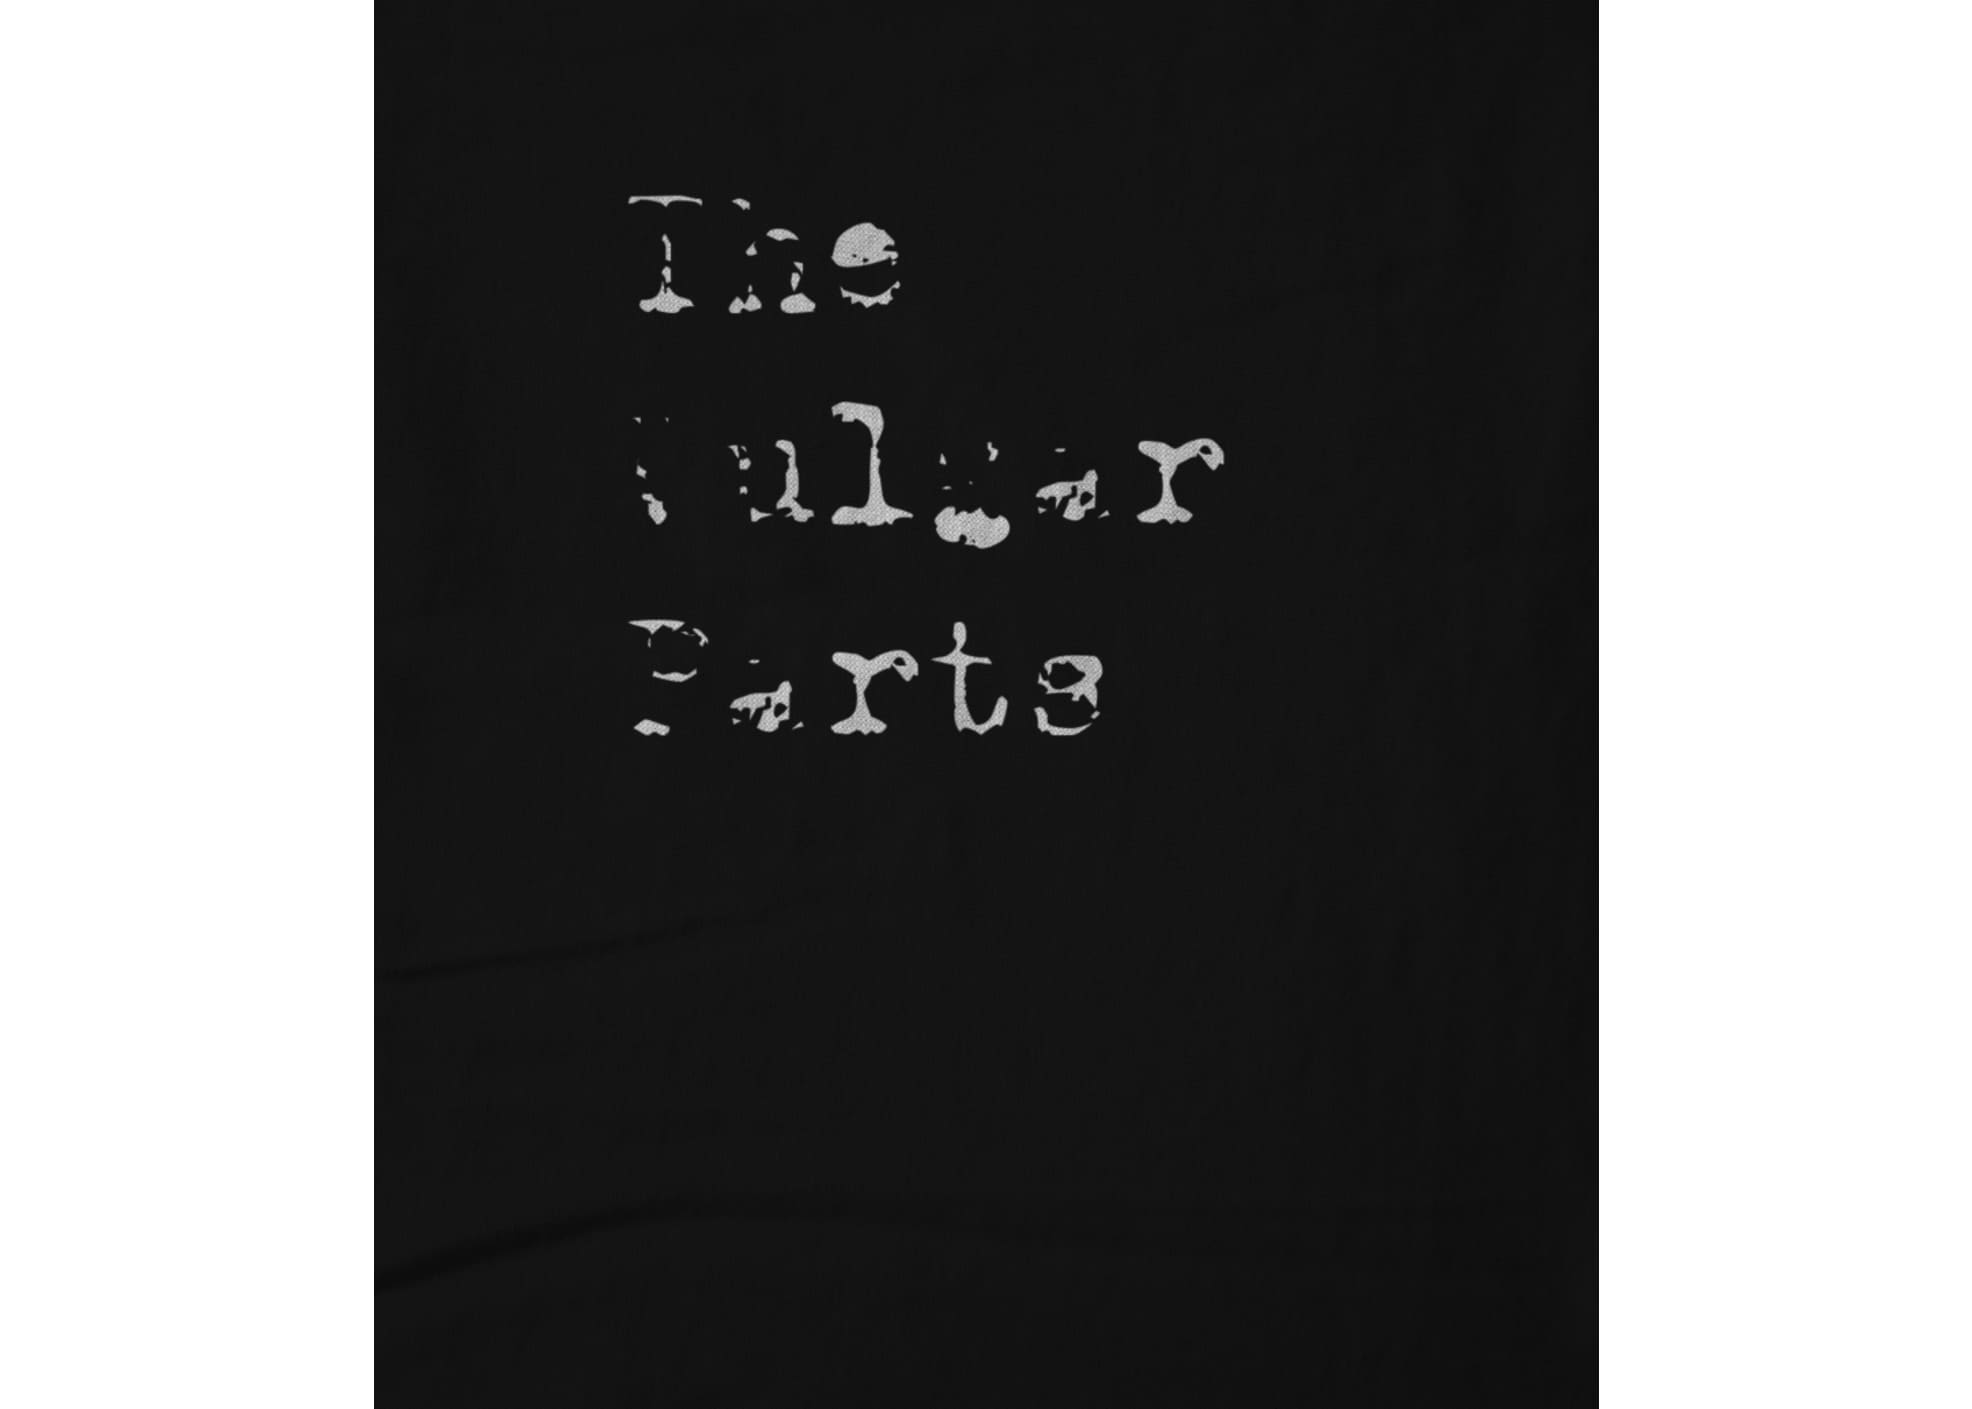 The vulgar parts v2 the vulgar parts v2 1619886421